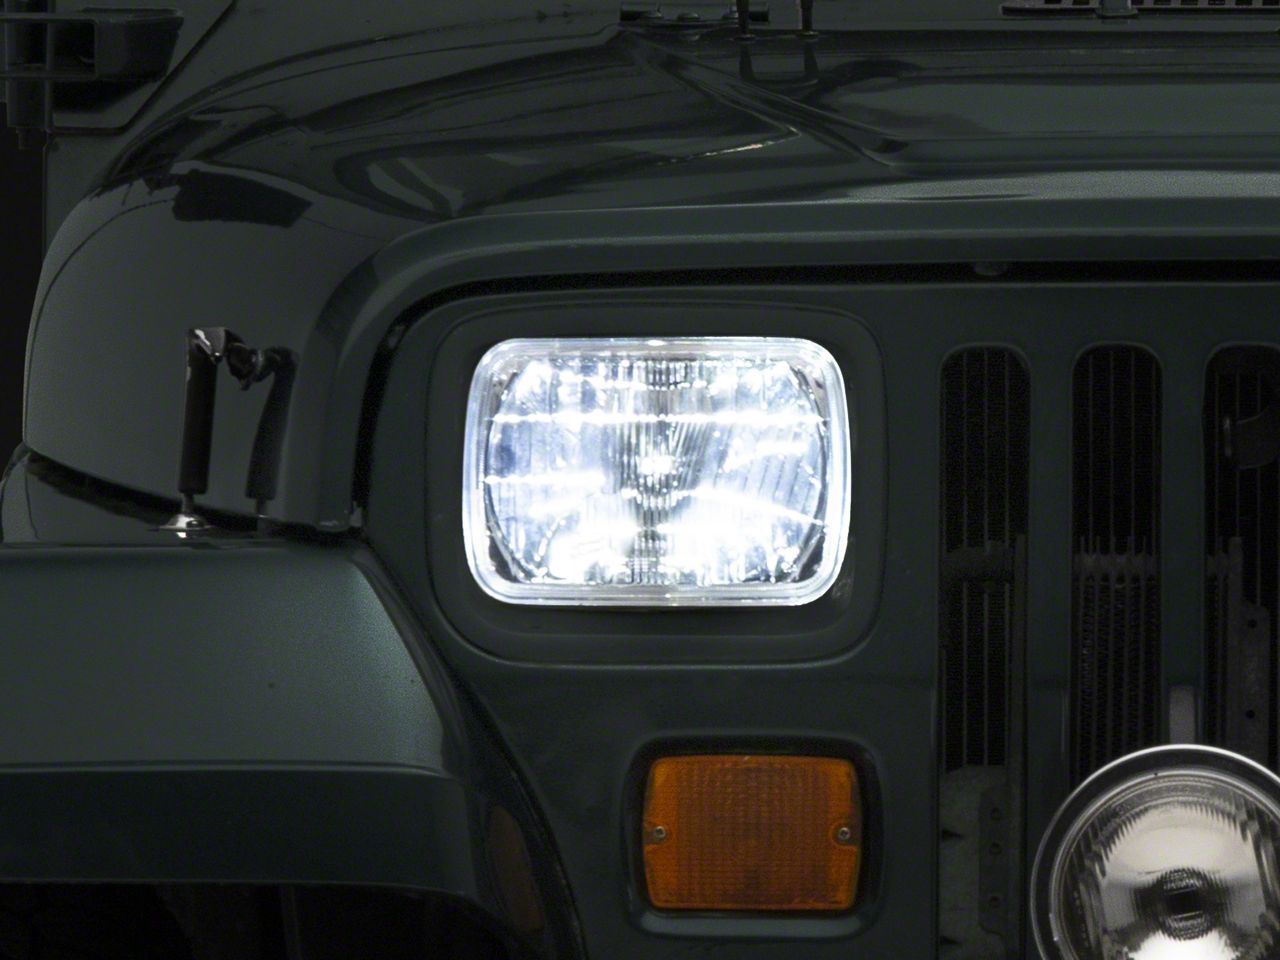 led headlamps for trucks